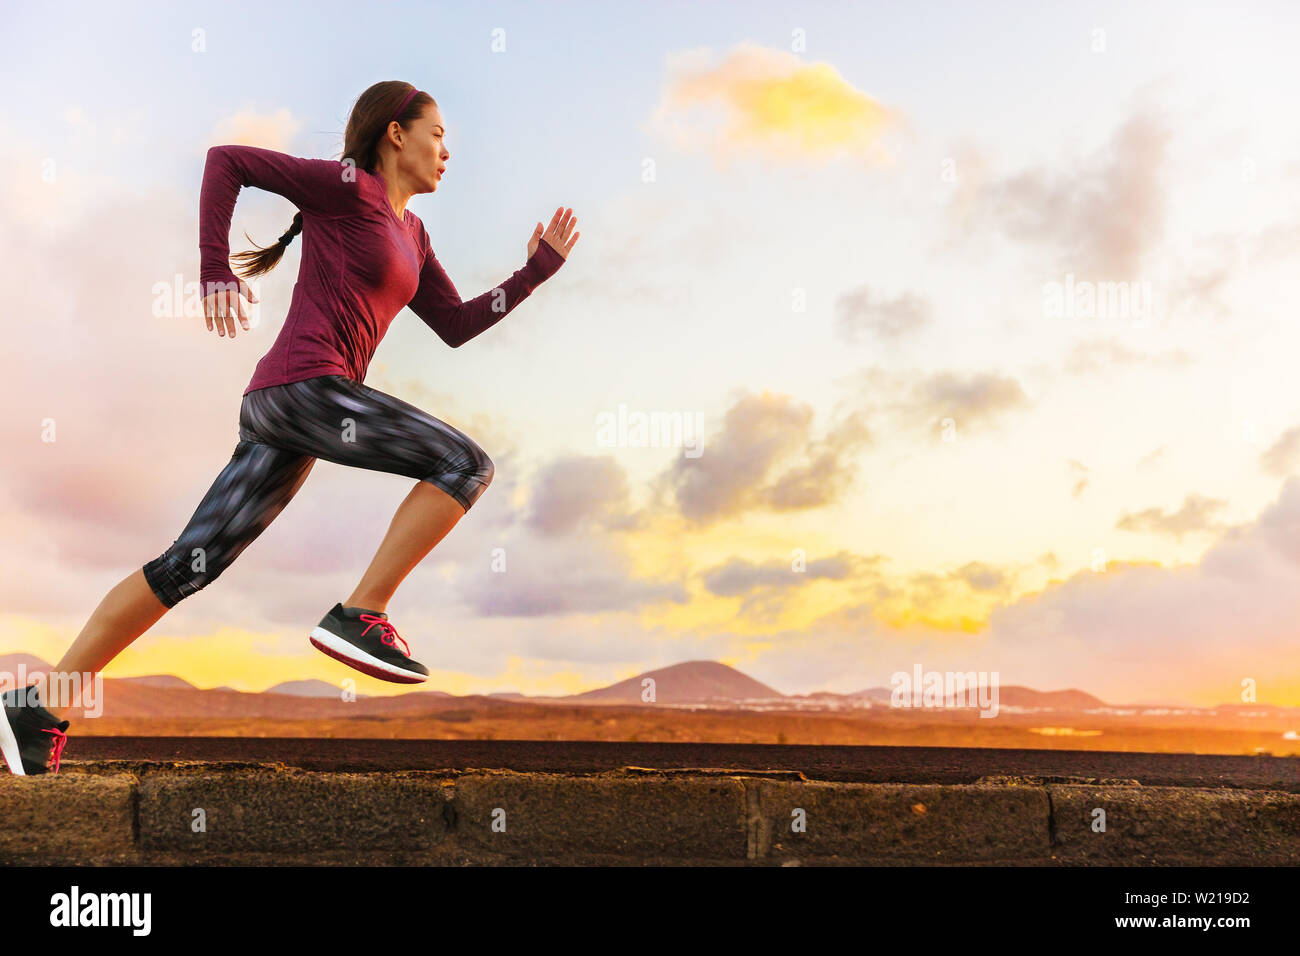 Atleta trail running silhouette di donna runner al tramonto sunrise. Cardio fitness training di maratona gara sportive. Attiva uno stile di vita sano in estate natura all'esterno. Foto Stock